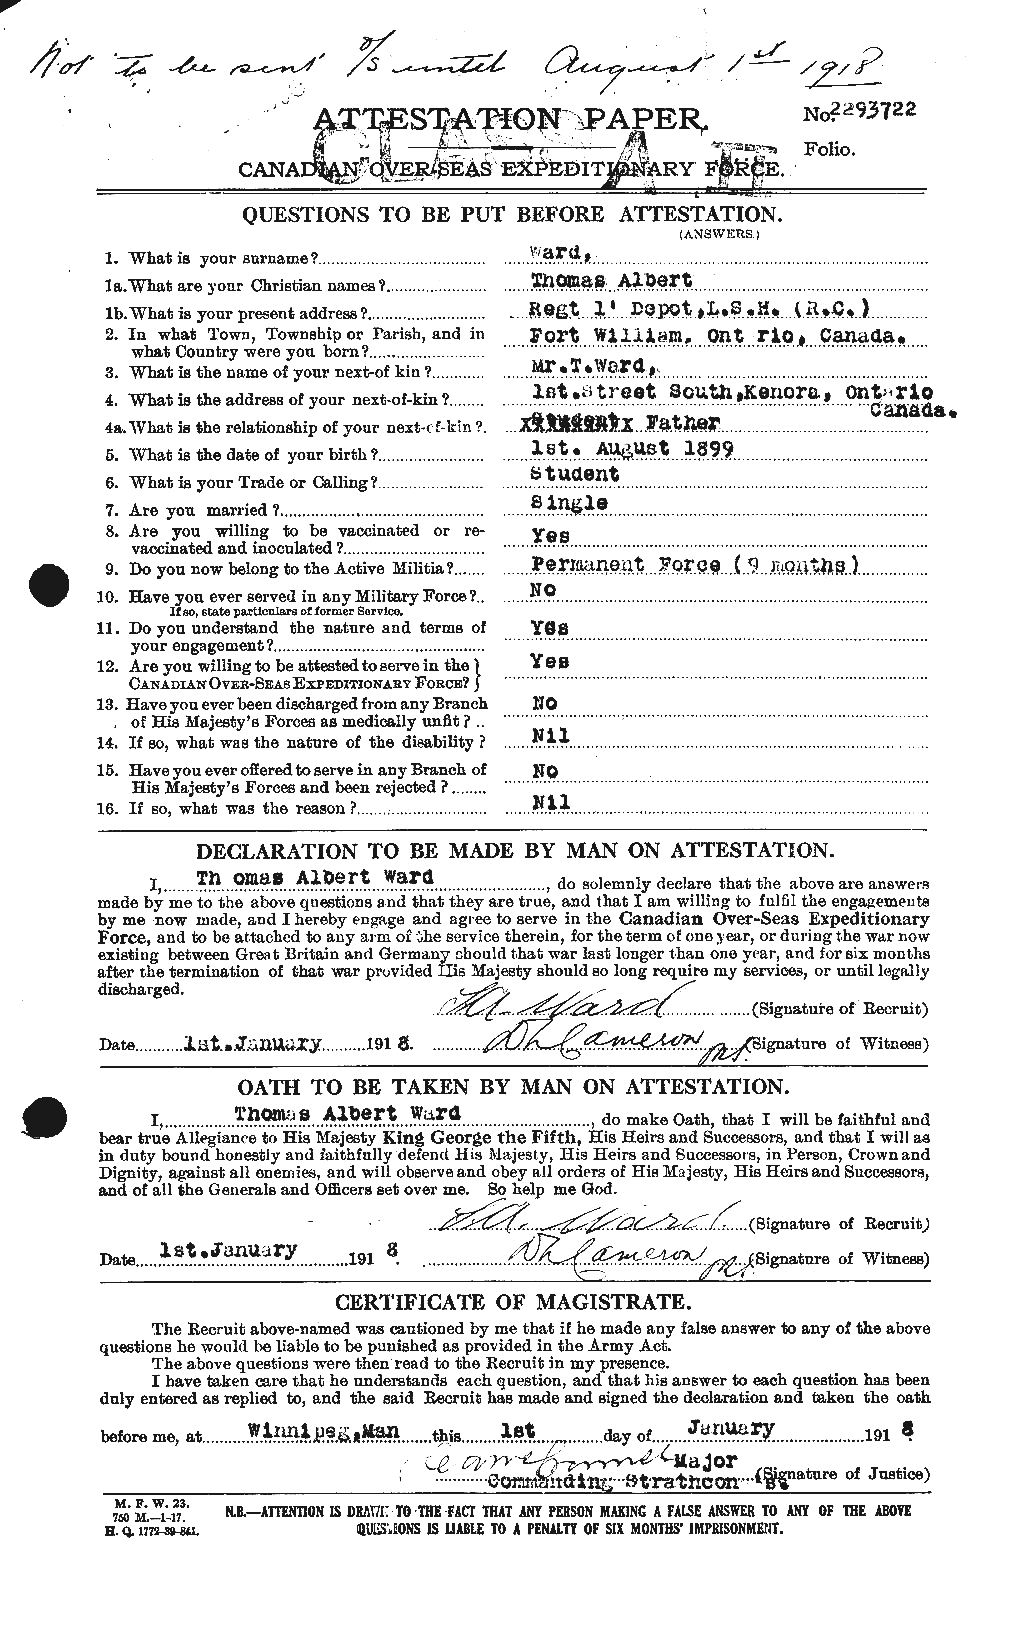 Dossiers du Personnel de la Première Guerre mondiale - CEC 659720a